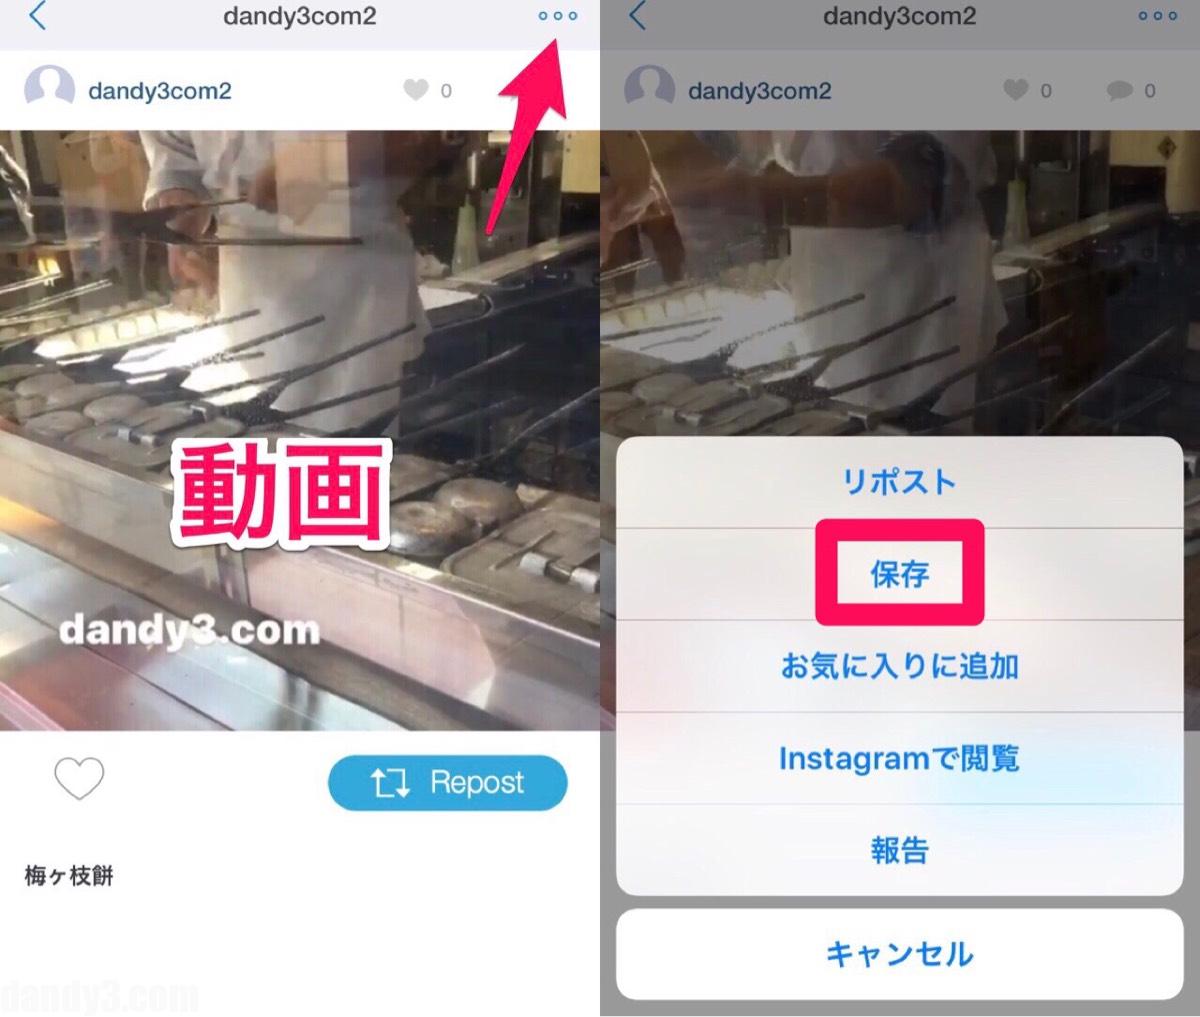 Instagram インスタのストーリー 写真 動画の保存の方法 九州dandy